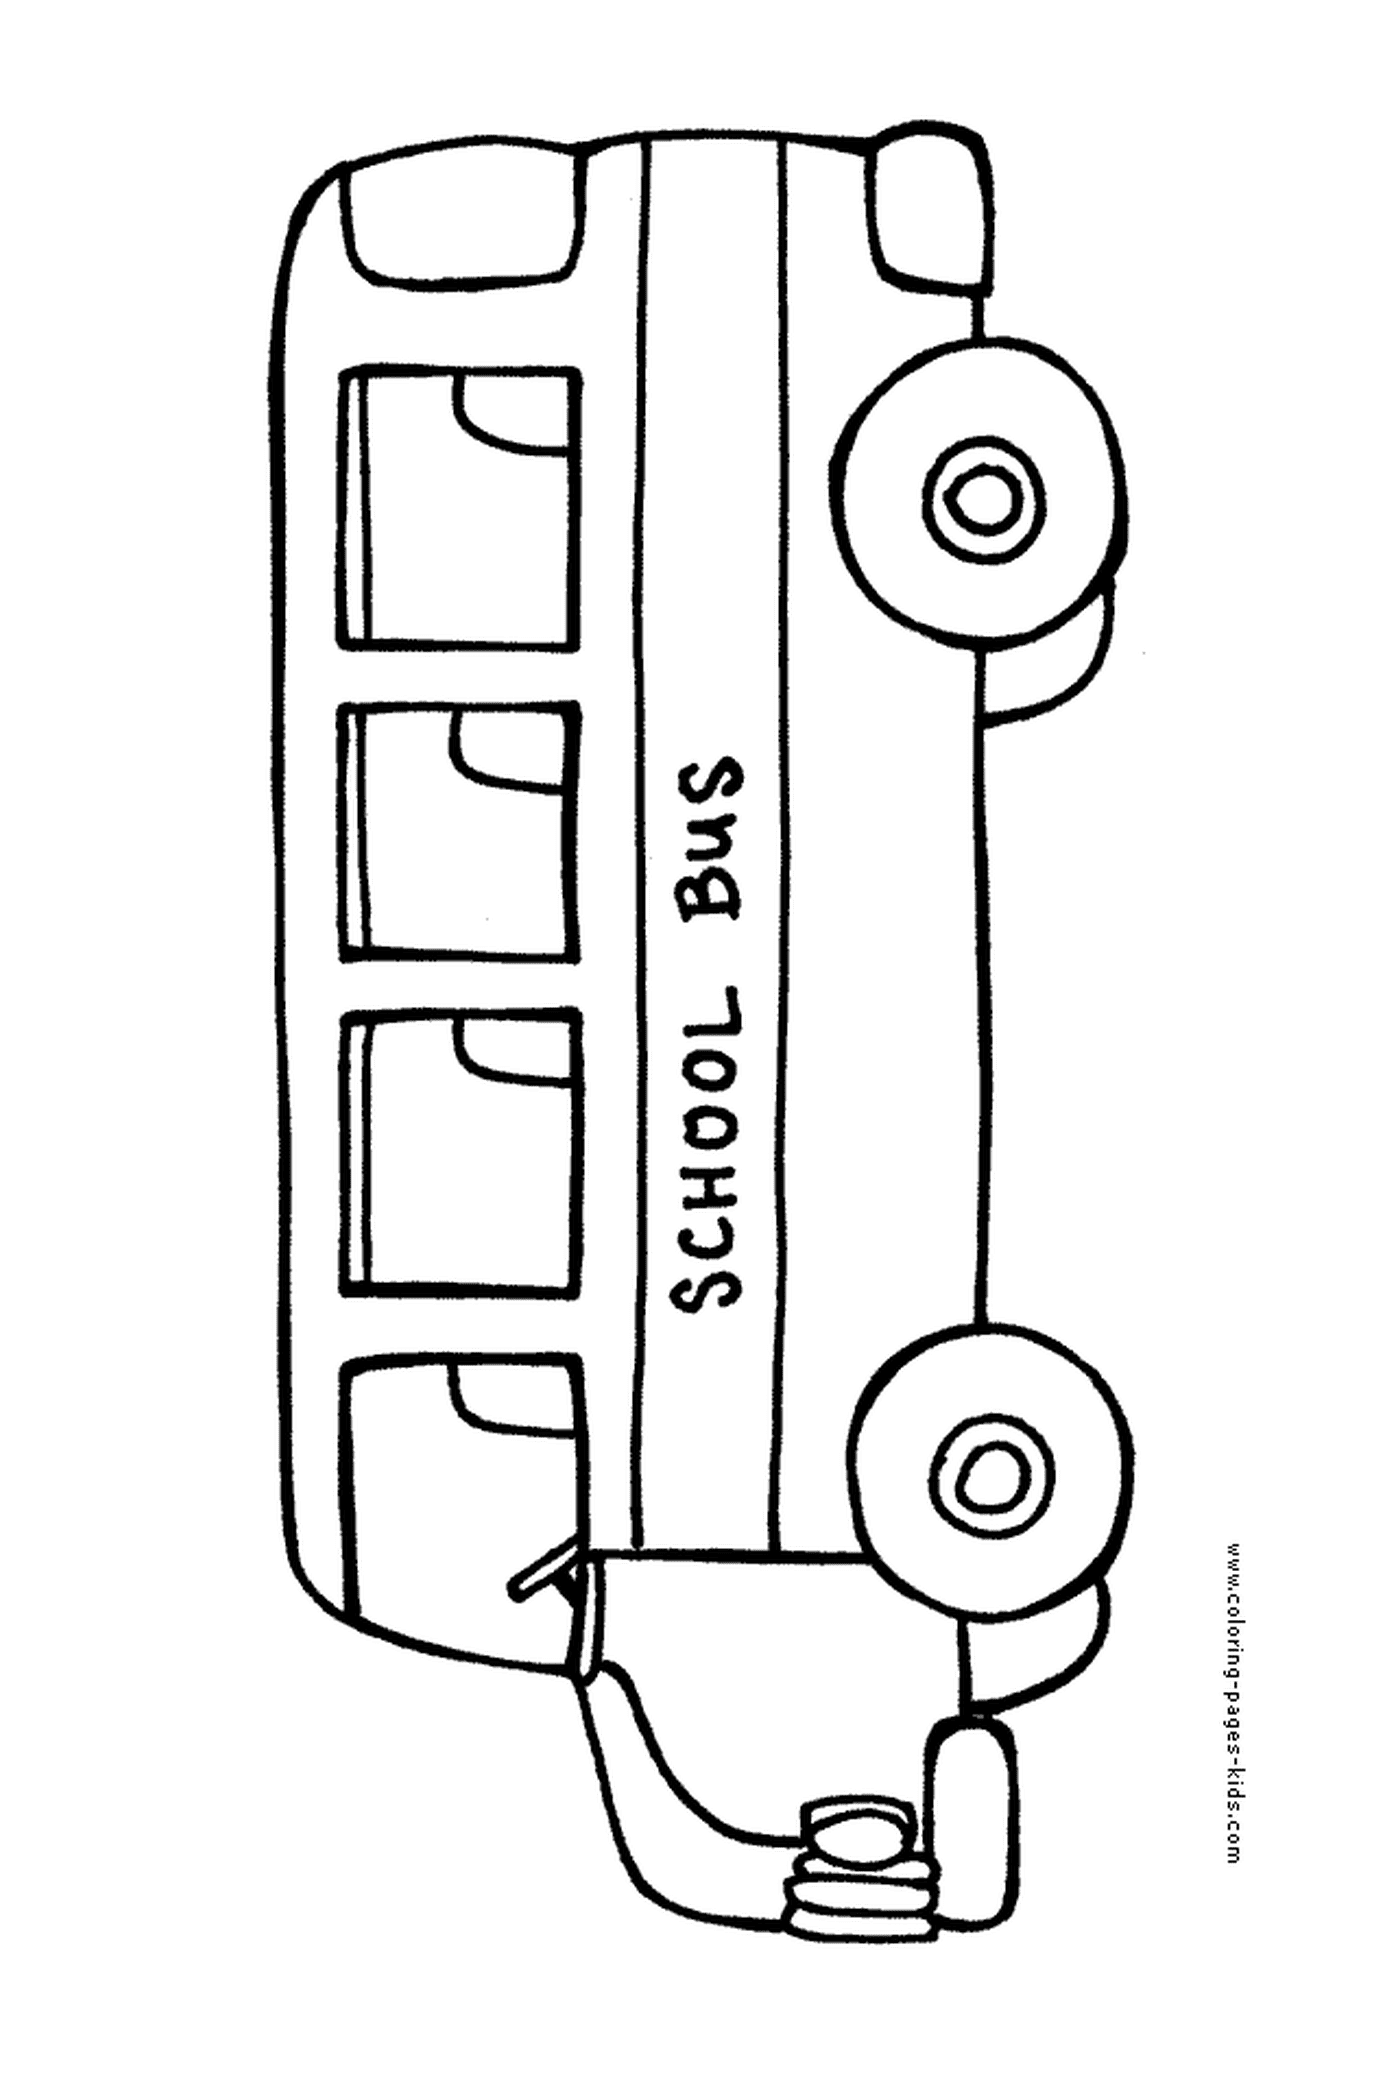   Un bus scolaire se déplace lentement 